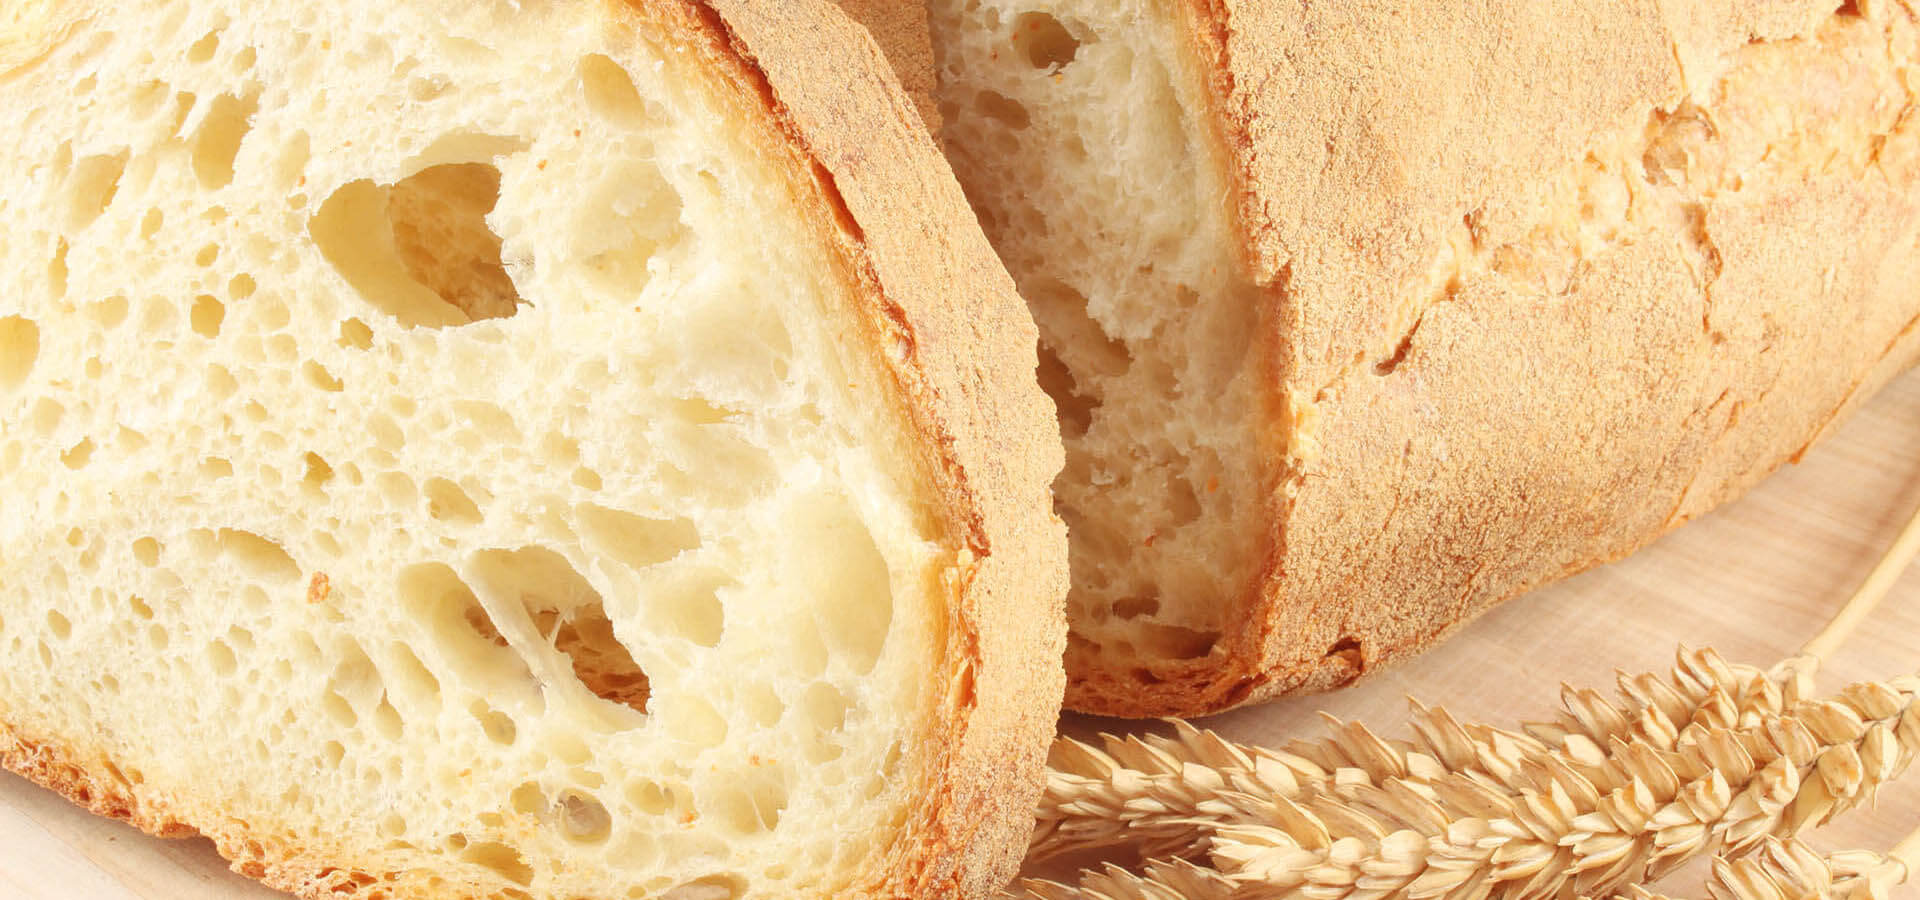 Botto's bread